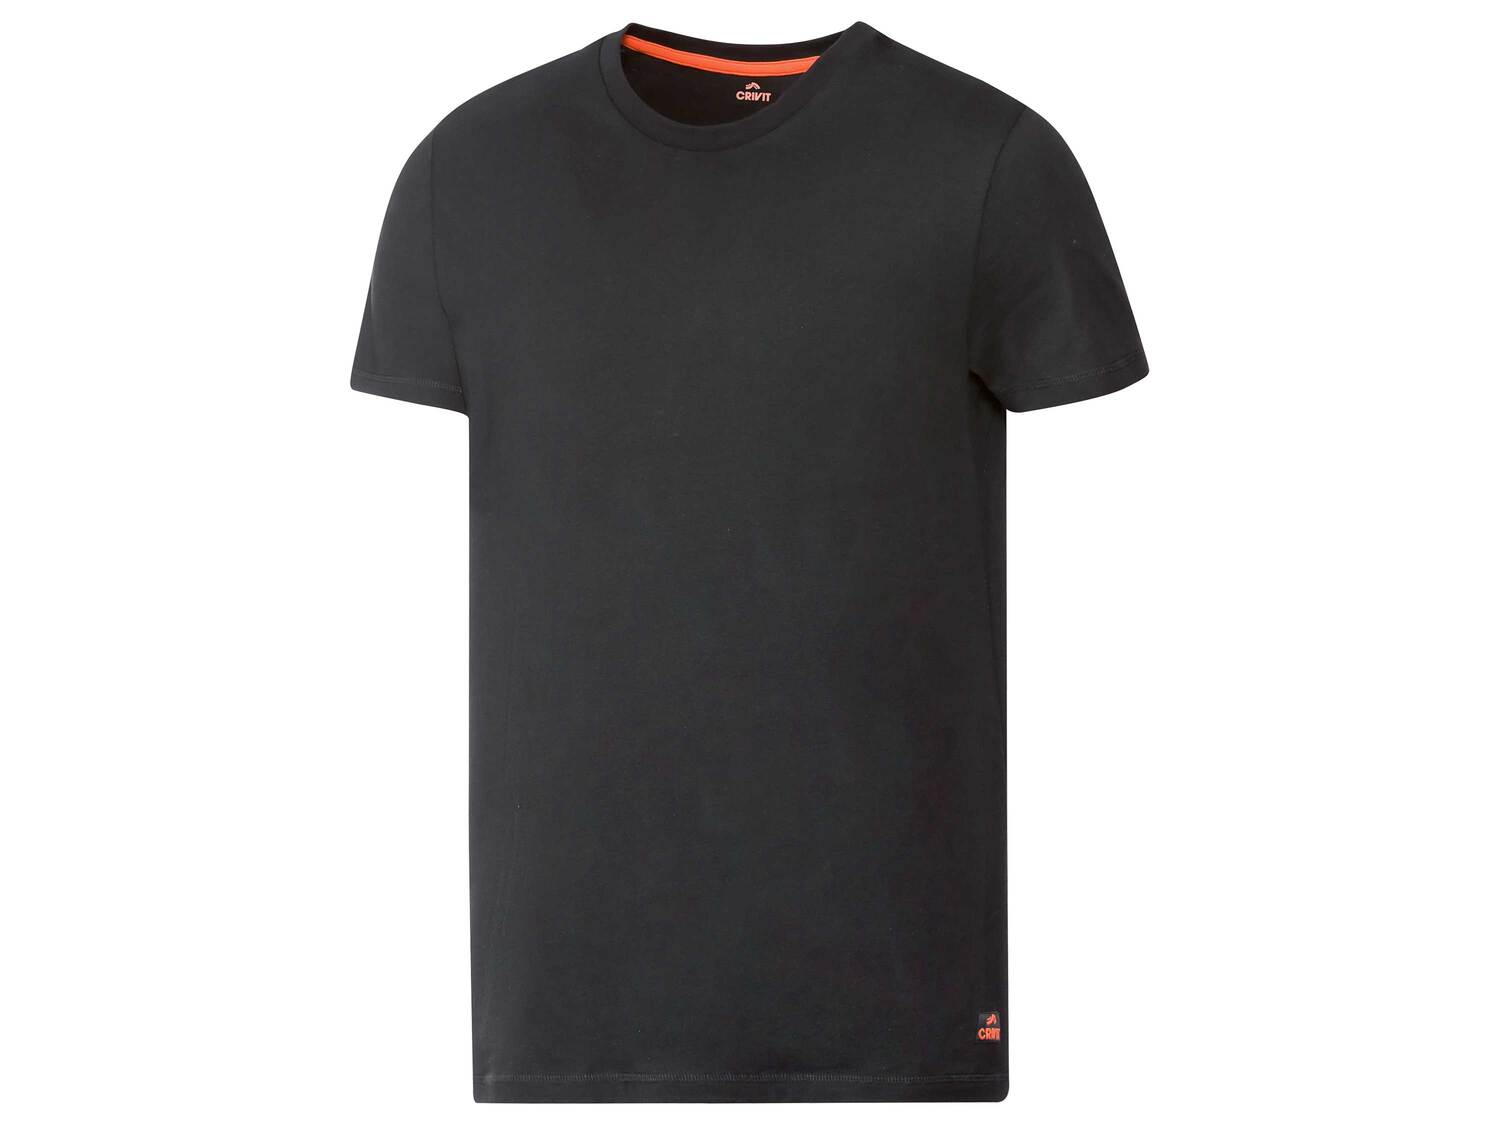 T-shirt technique , le prix 3.99 &#8364; 
- Du S au XL selon mod&egrave;le
- ...